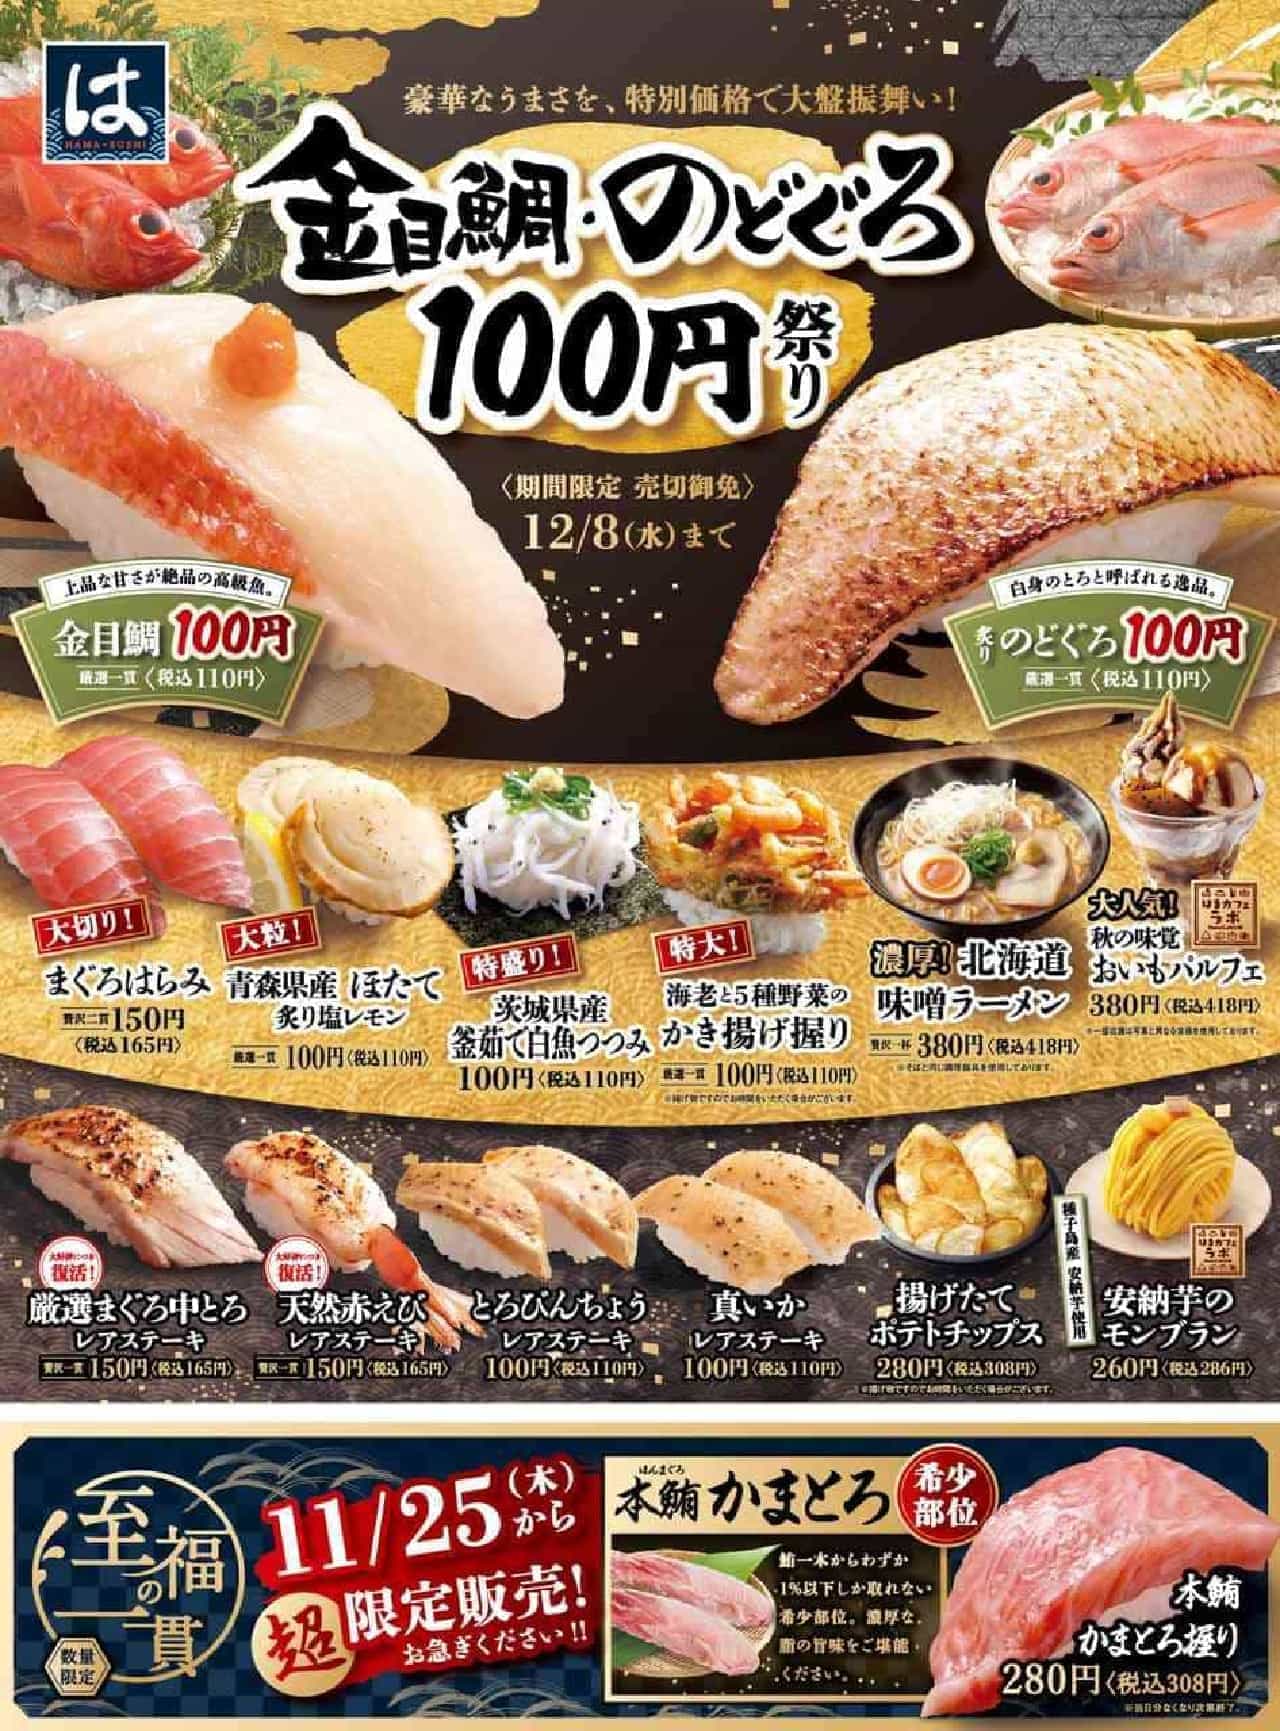 Hamazushi “Kanemedai / Nodoguro 100 Yen Festival”